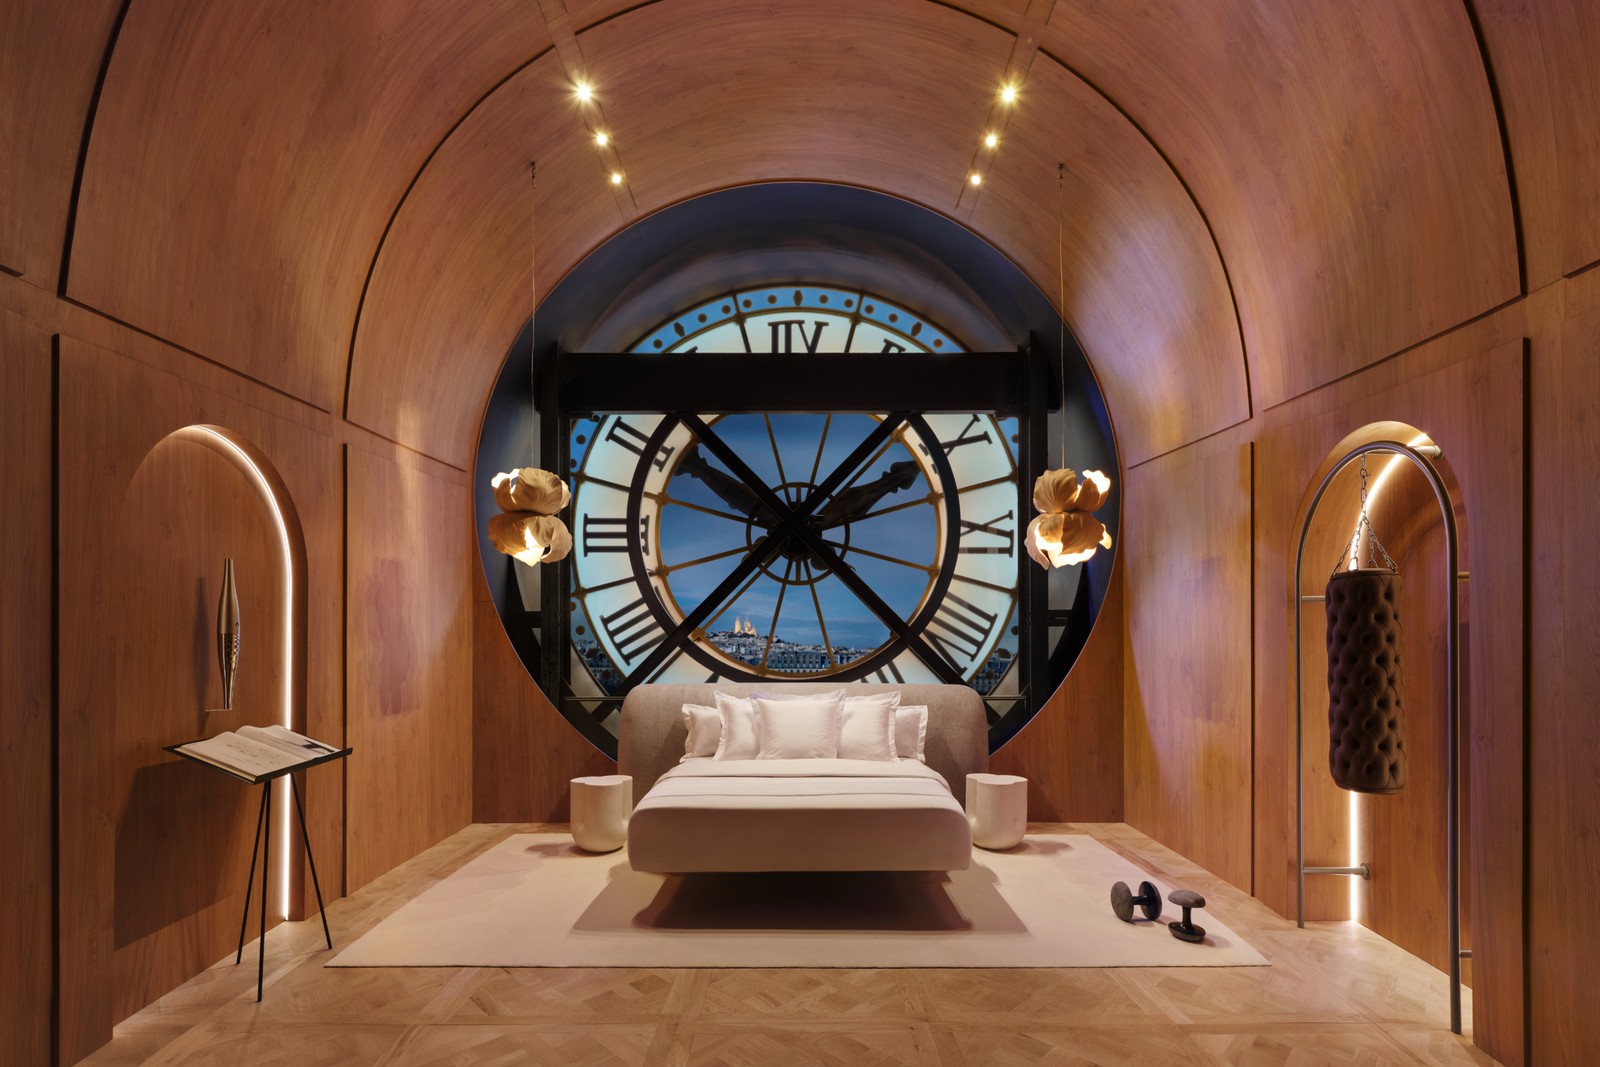 A sala do relógio foi transformada em quarto para receber hóspedes via reserva pelo Airbnb